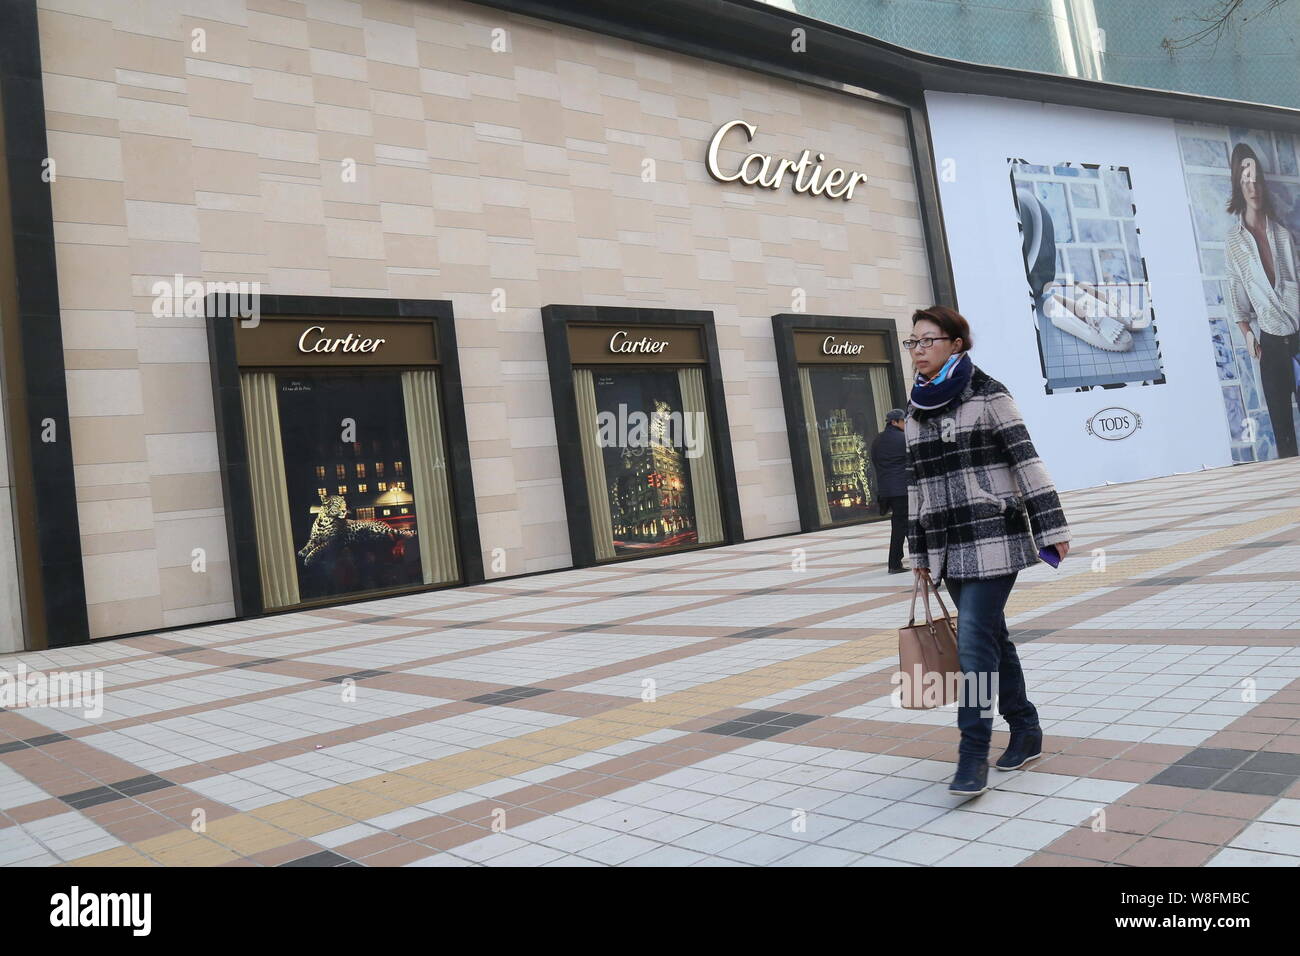 pedestrian walks past the Cartier store 